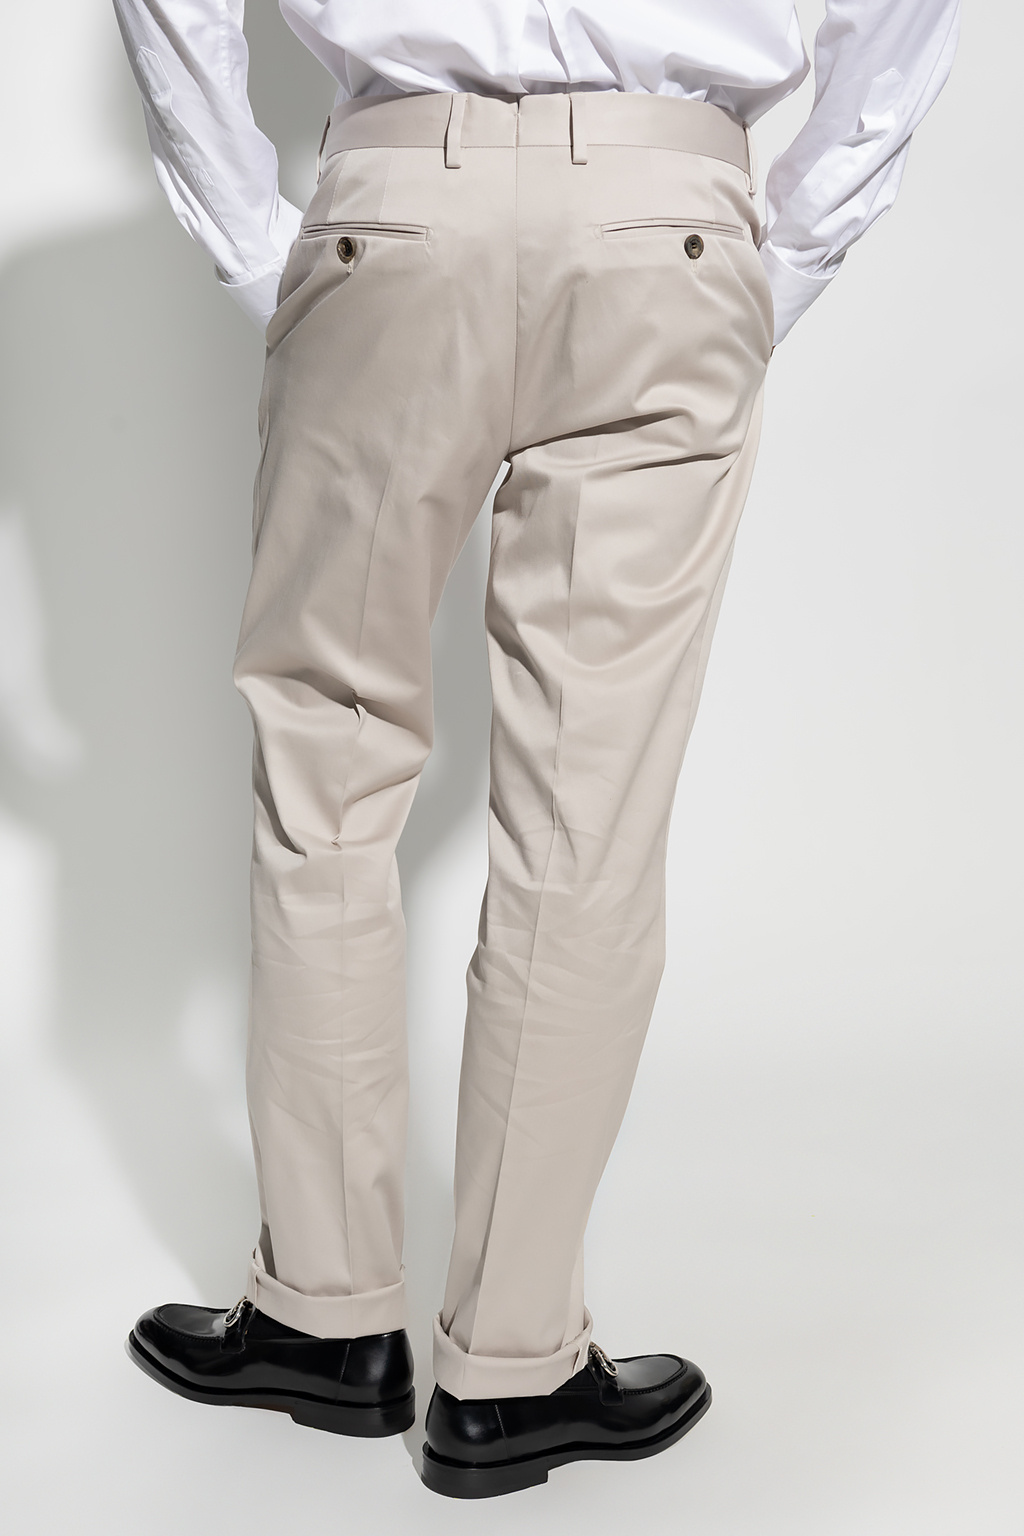 Salvatore Ferragamo Cotton pleat-front floral trousers